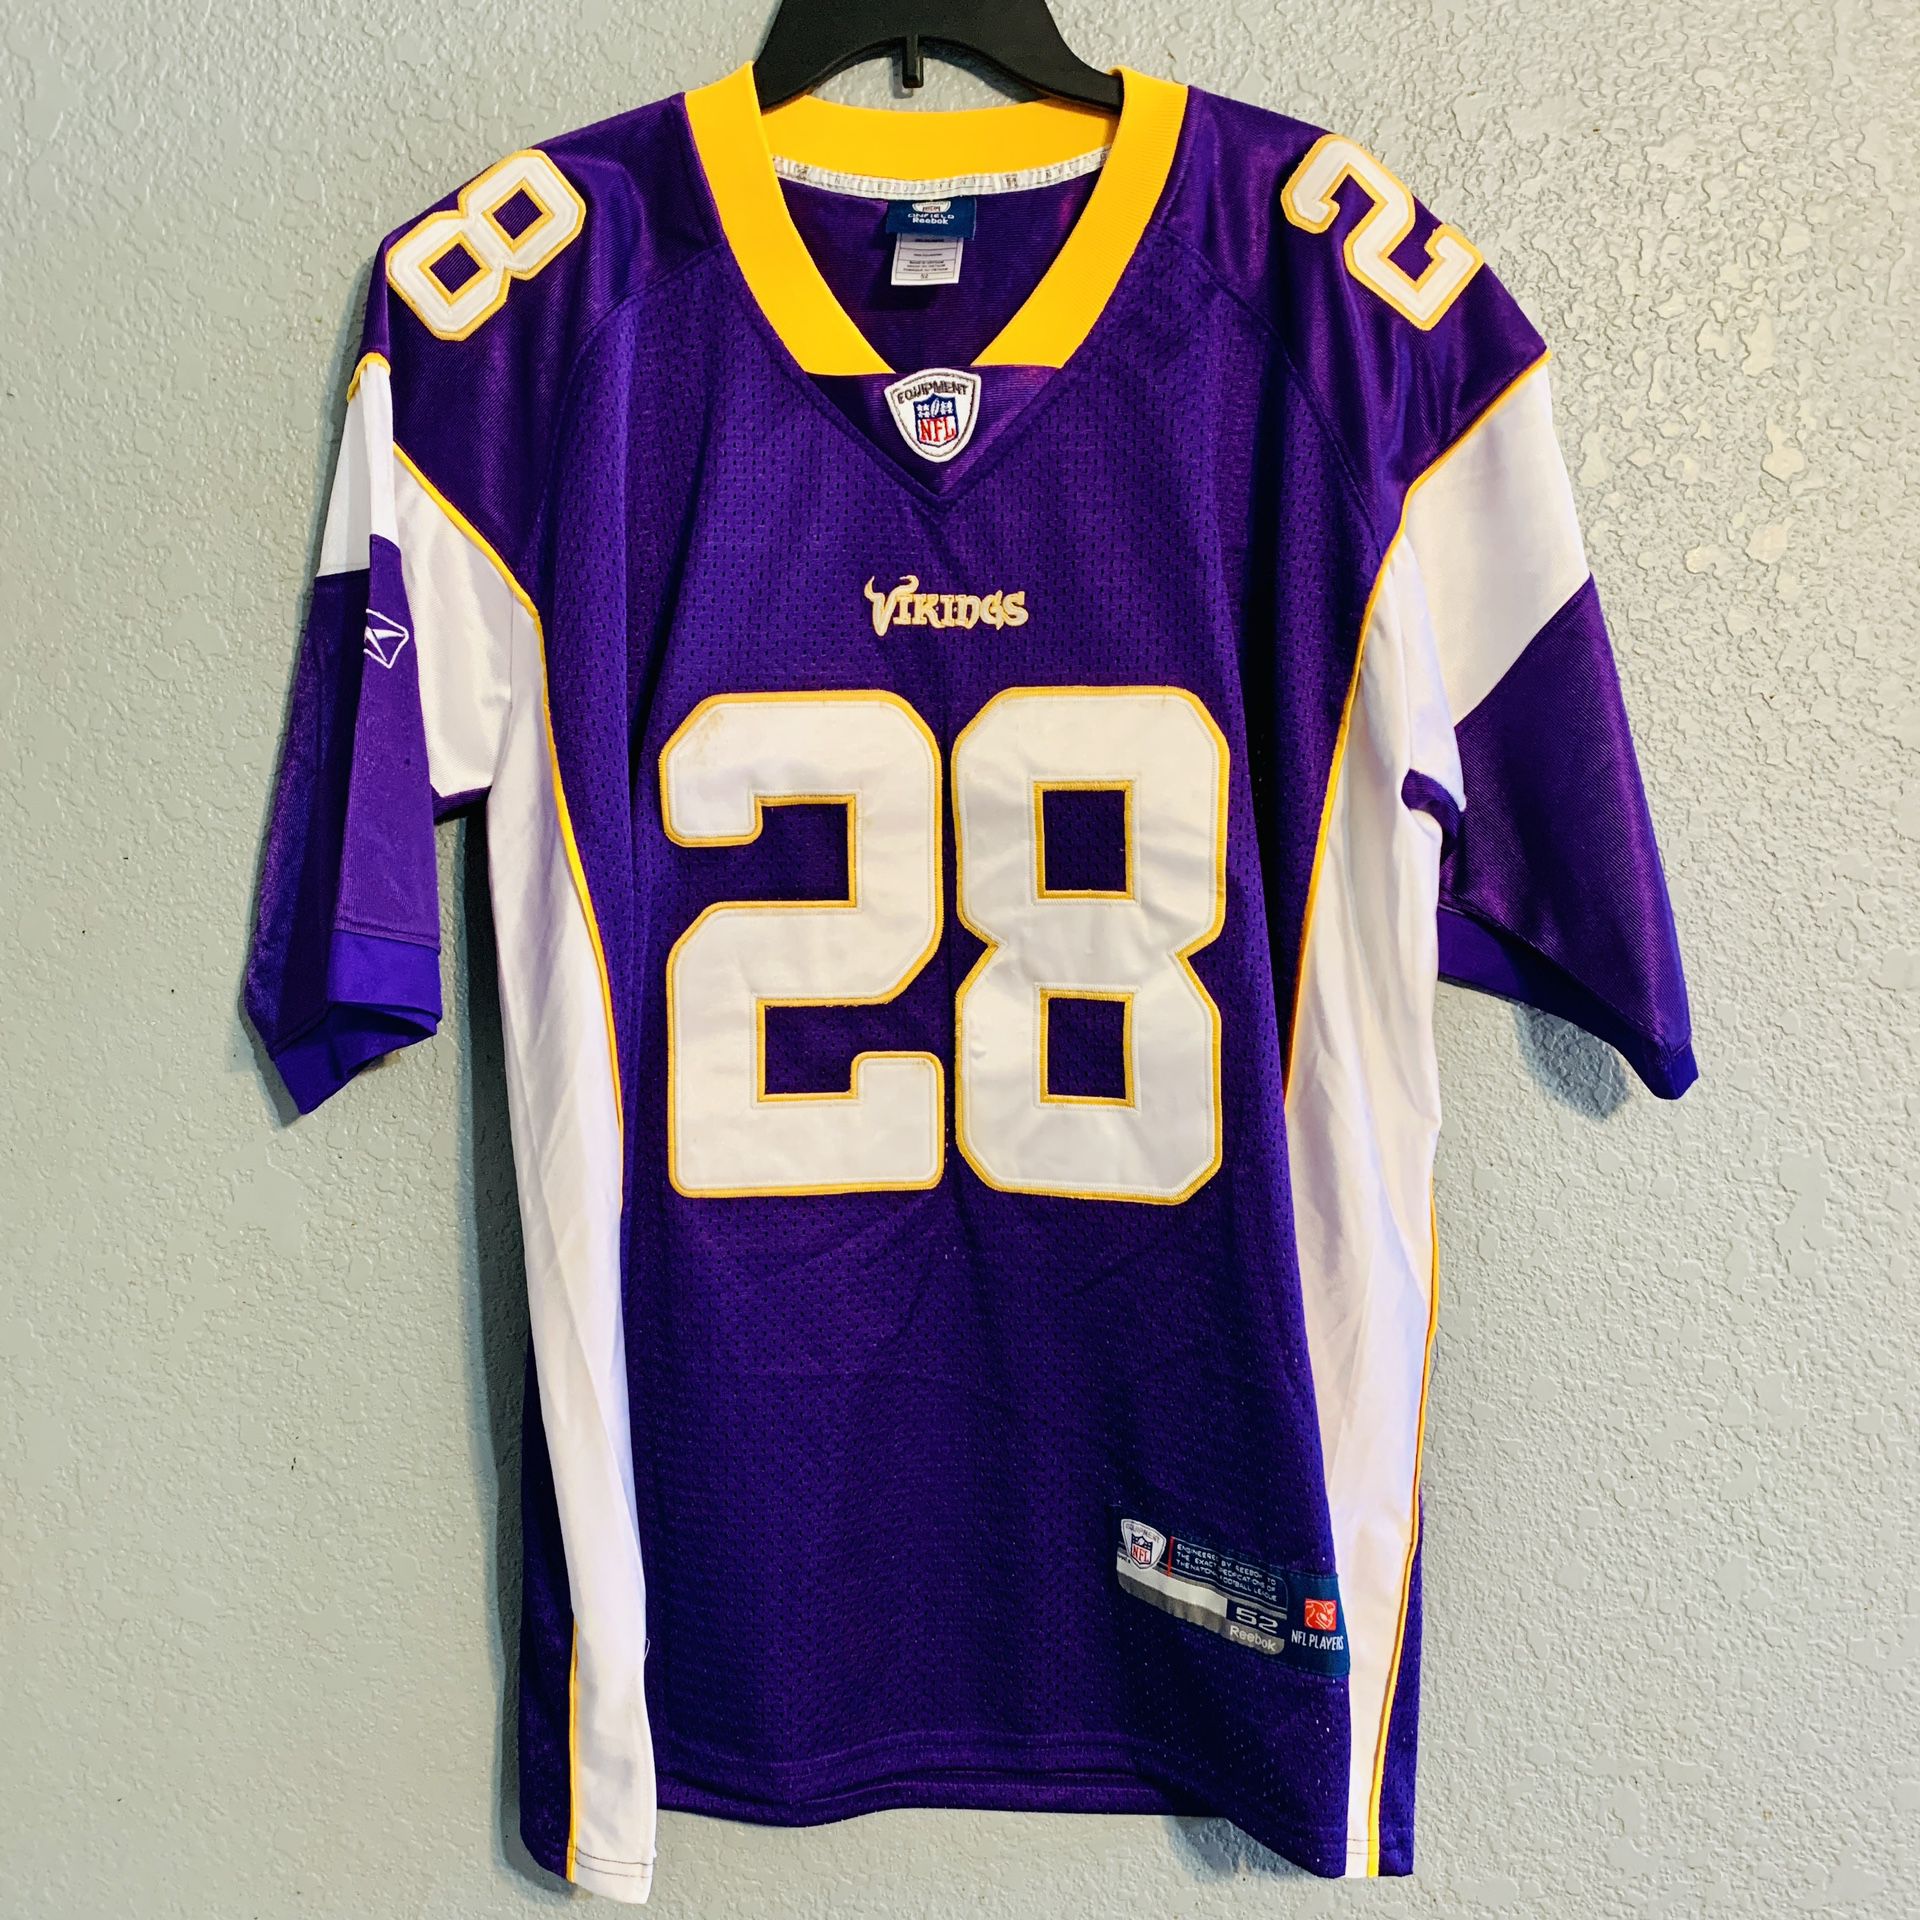 Men’s Reebok NFL Vikings Peterson Jersey (XL) for Sale in Eleven Mile ...